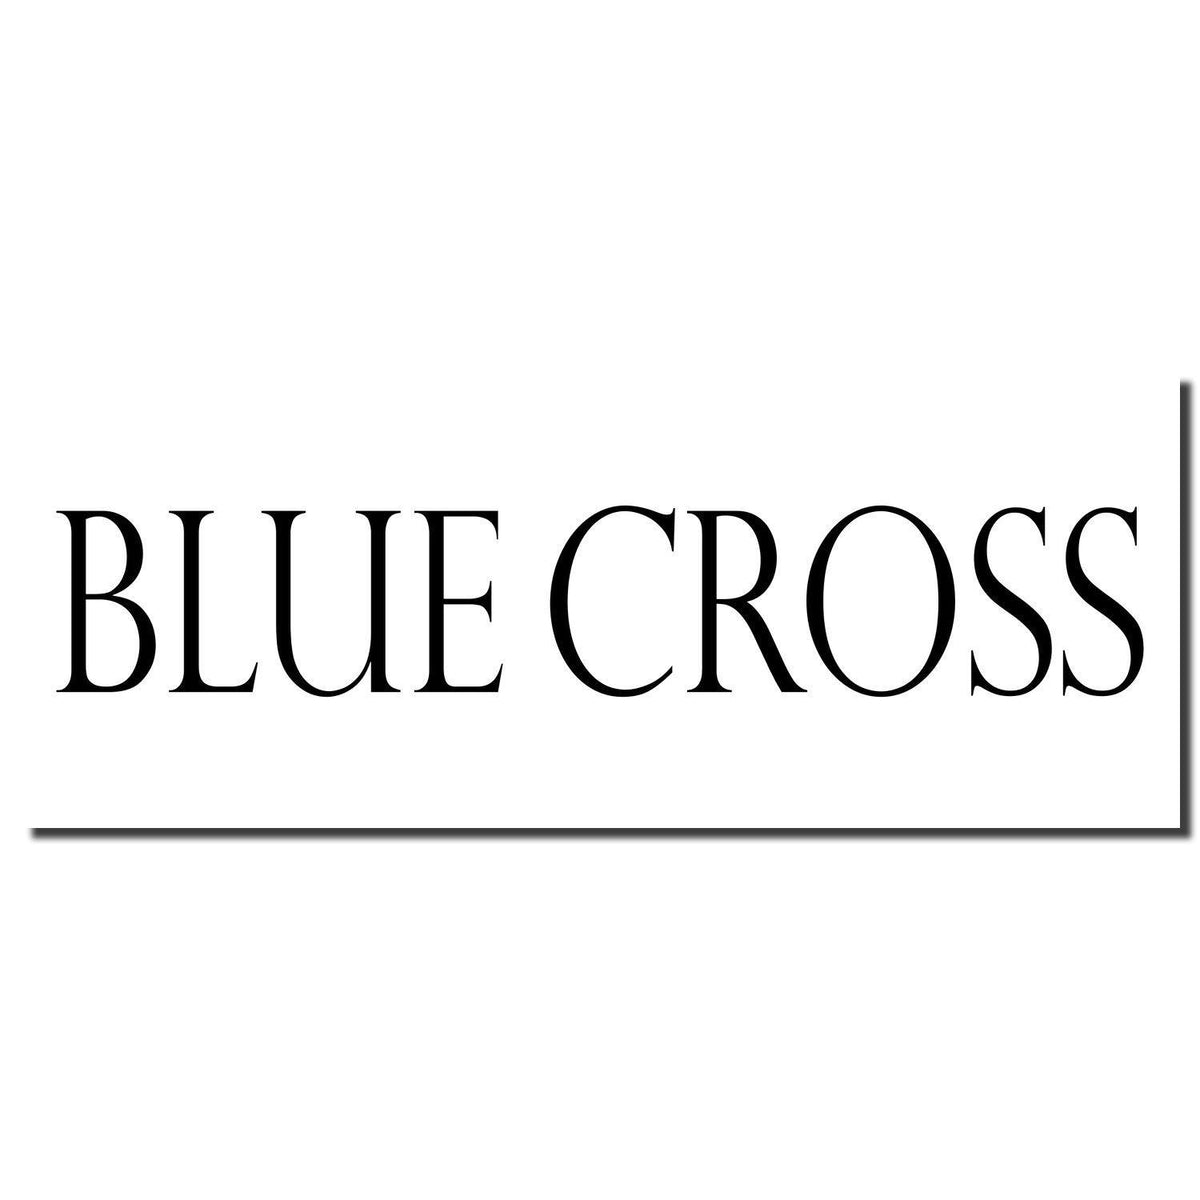 Enlarged Imprint Blue Cross Rubber Stamp Sample